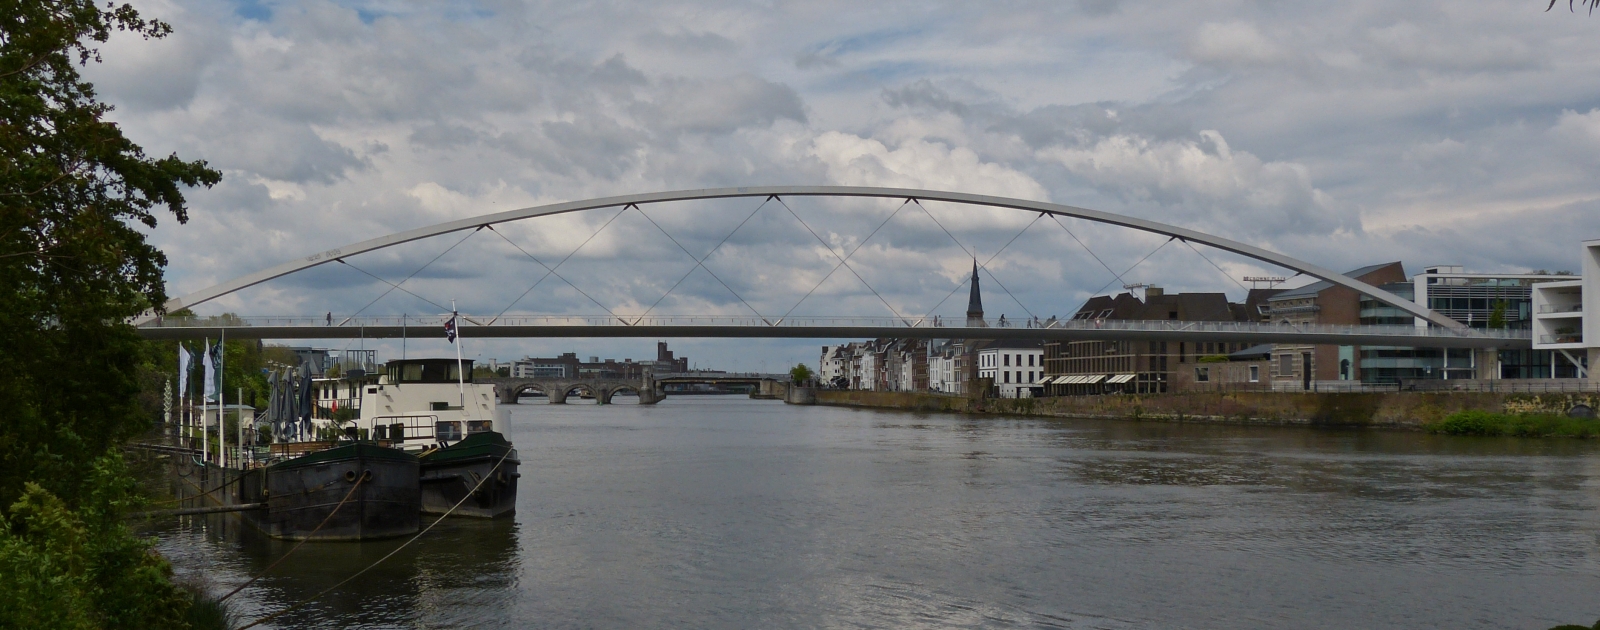 Die Fugnger- und Fahrradbrcke ber die Maas in Maastricht, links im Bild sieht man das Botelschiff was fest am Ufer verankert ist. 05.2023 